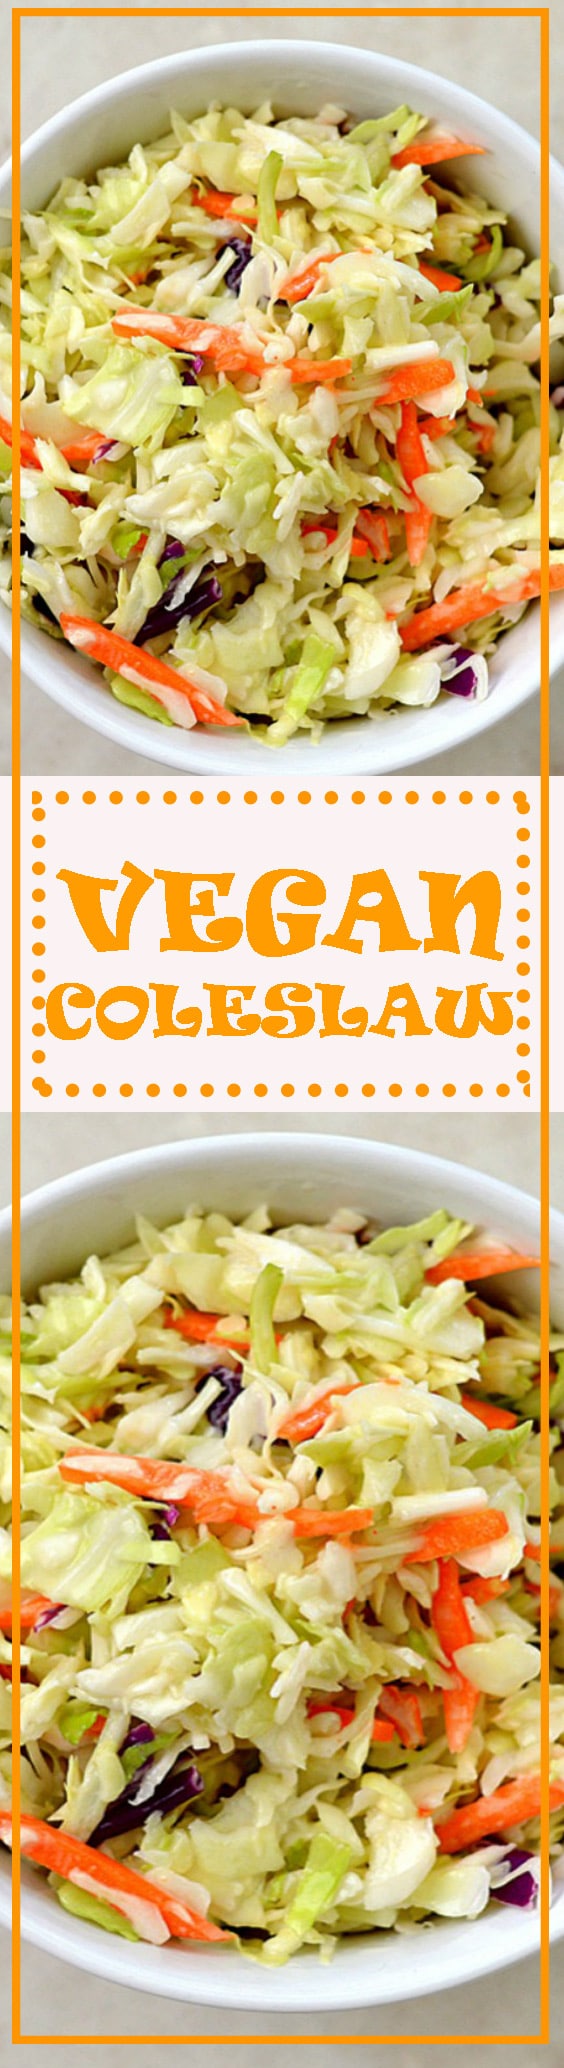 Vegan Coleslaw